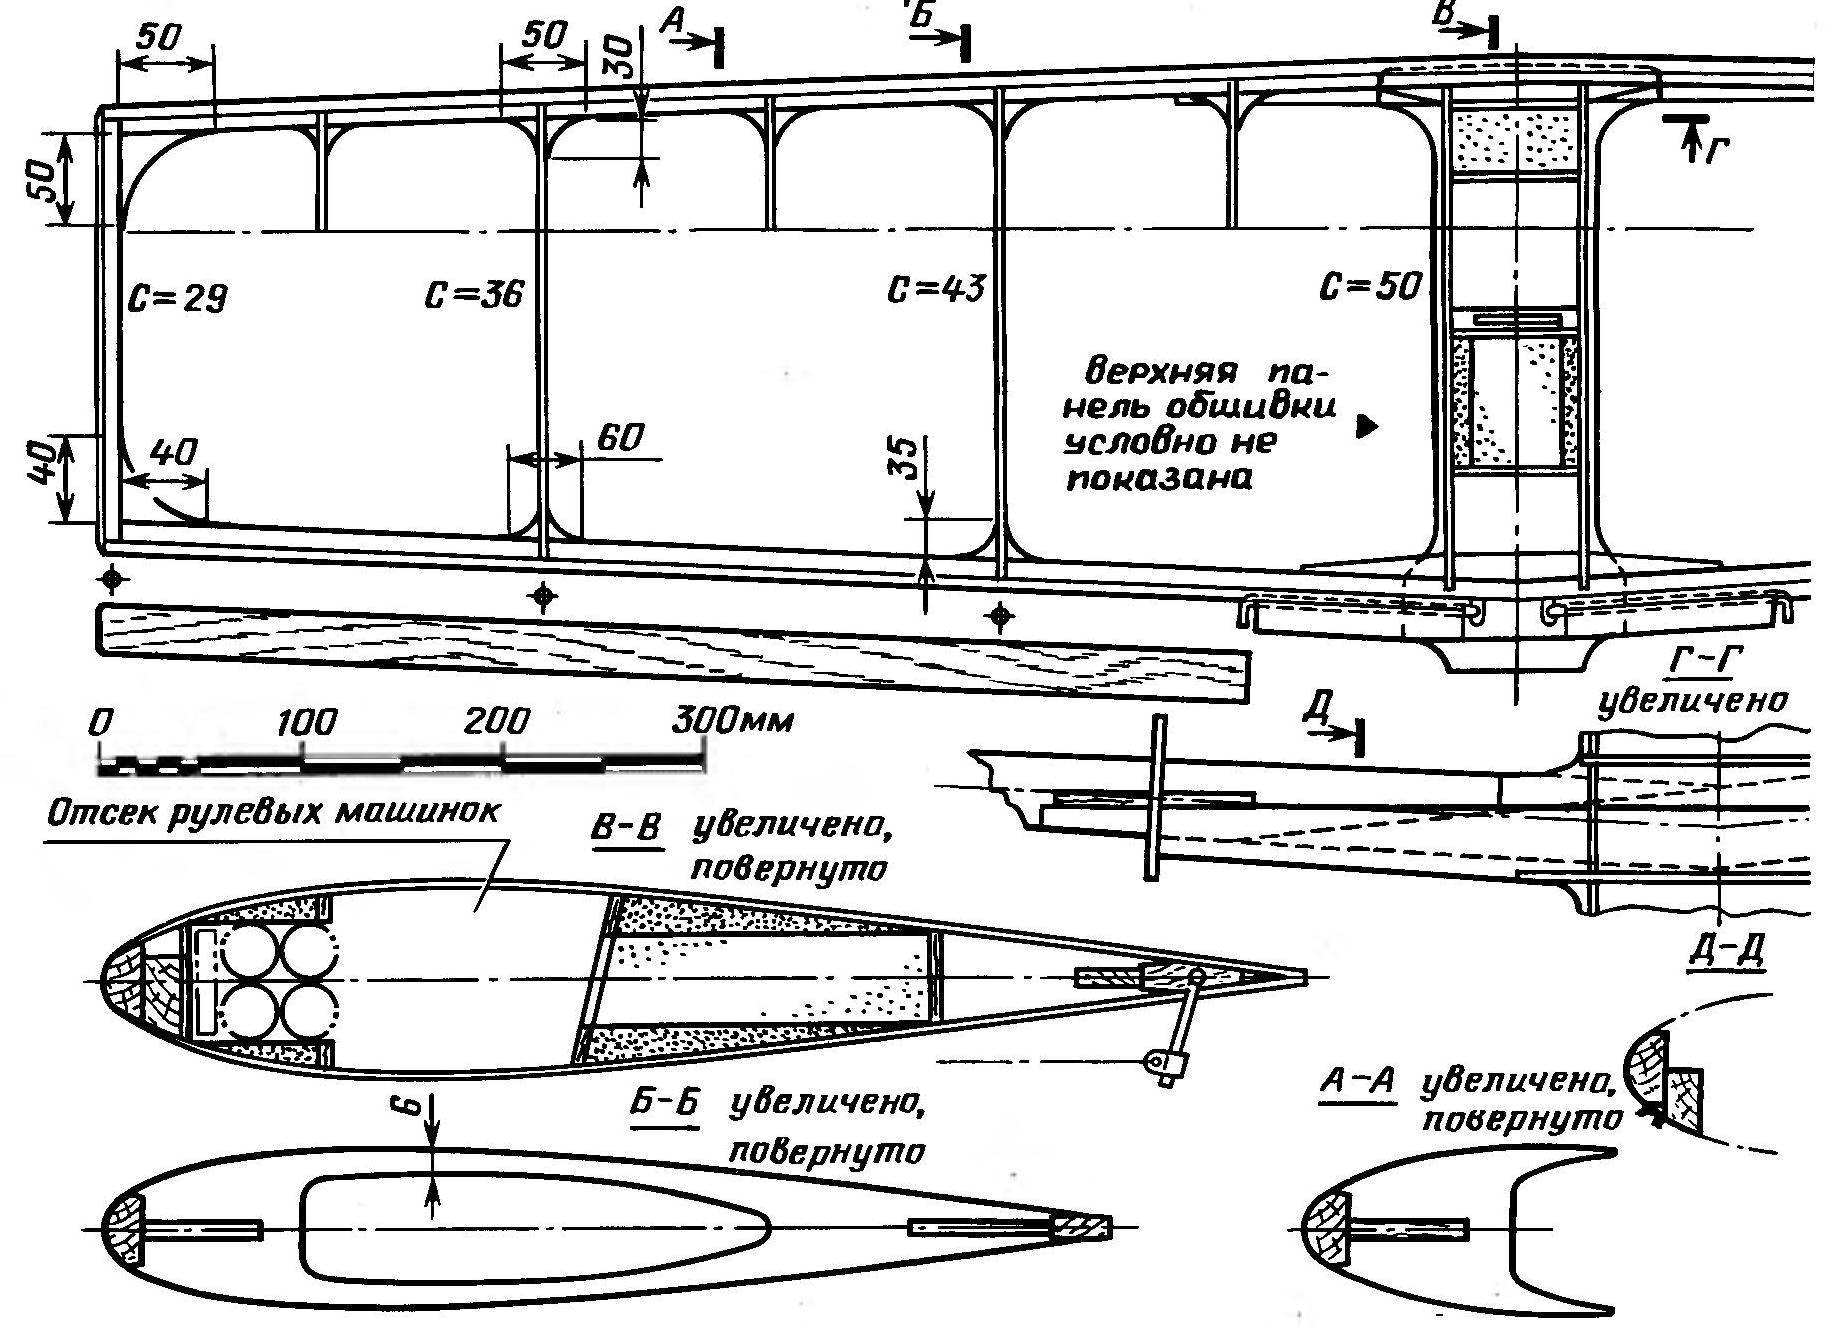 R n p. 5. Wing design